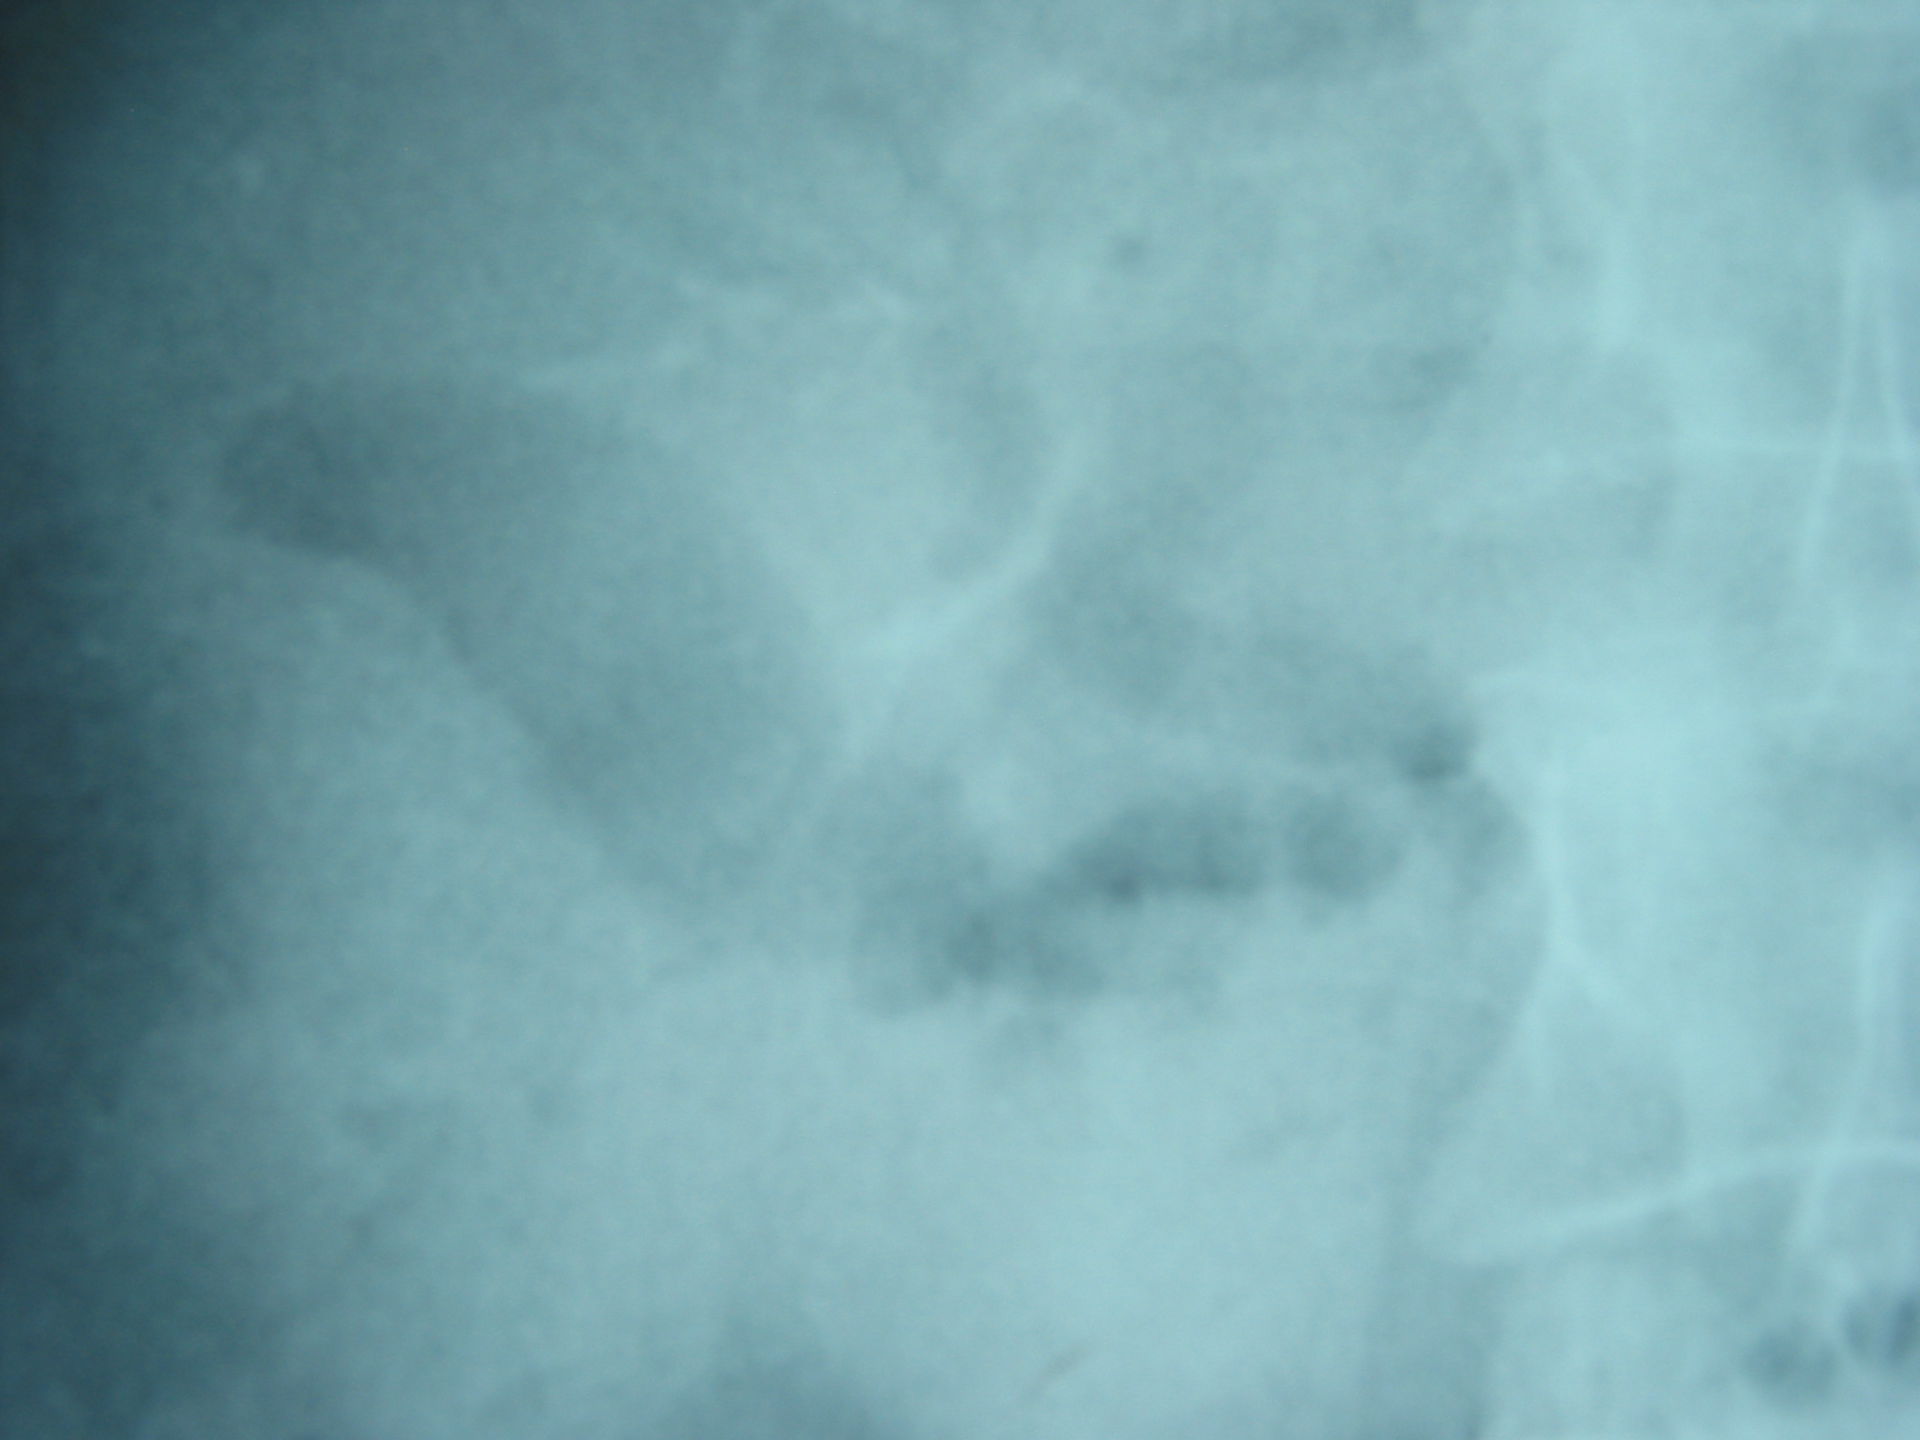 Pneumobilia in a patient with gallstone ileus